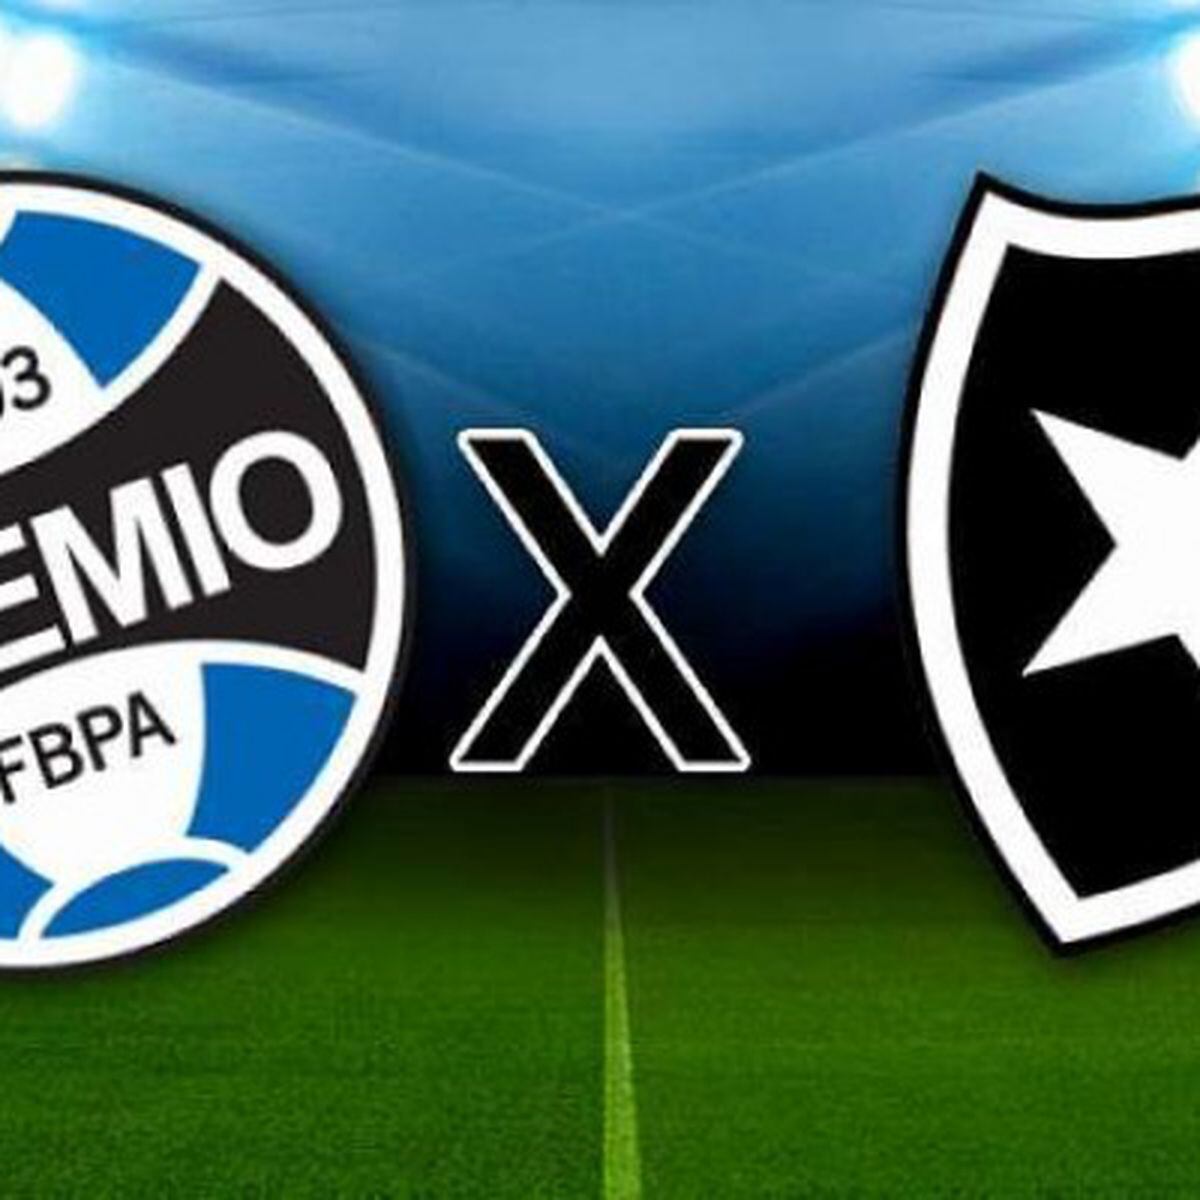 Botafogo x Grêmio: onde assistir, horário e escalação das equipes - Estadão